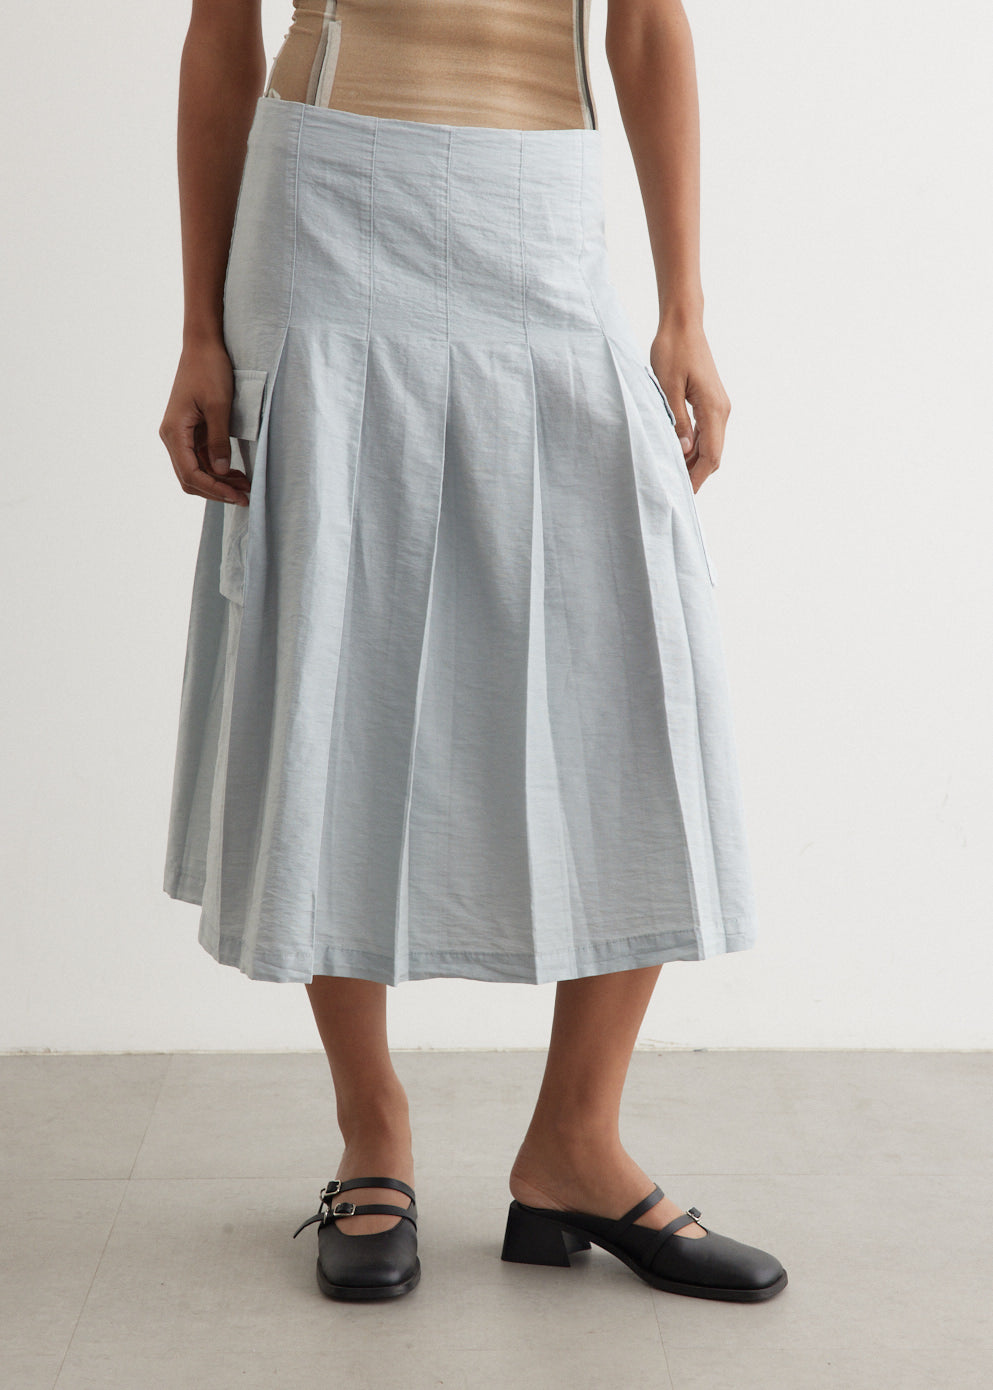 Pinet Skirt